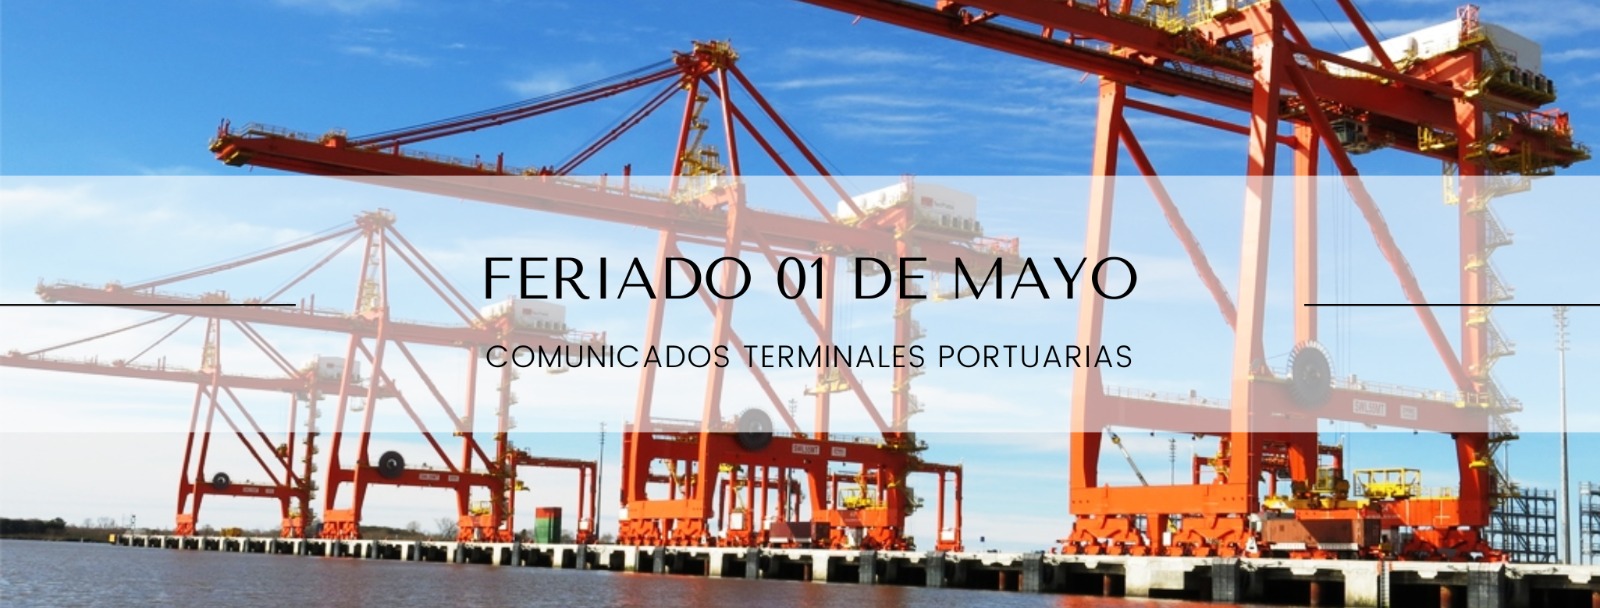 Cronograma operativo de las terminales portuarias - 1° de mayo